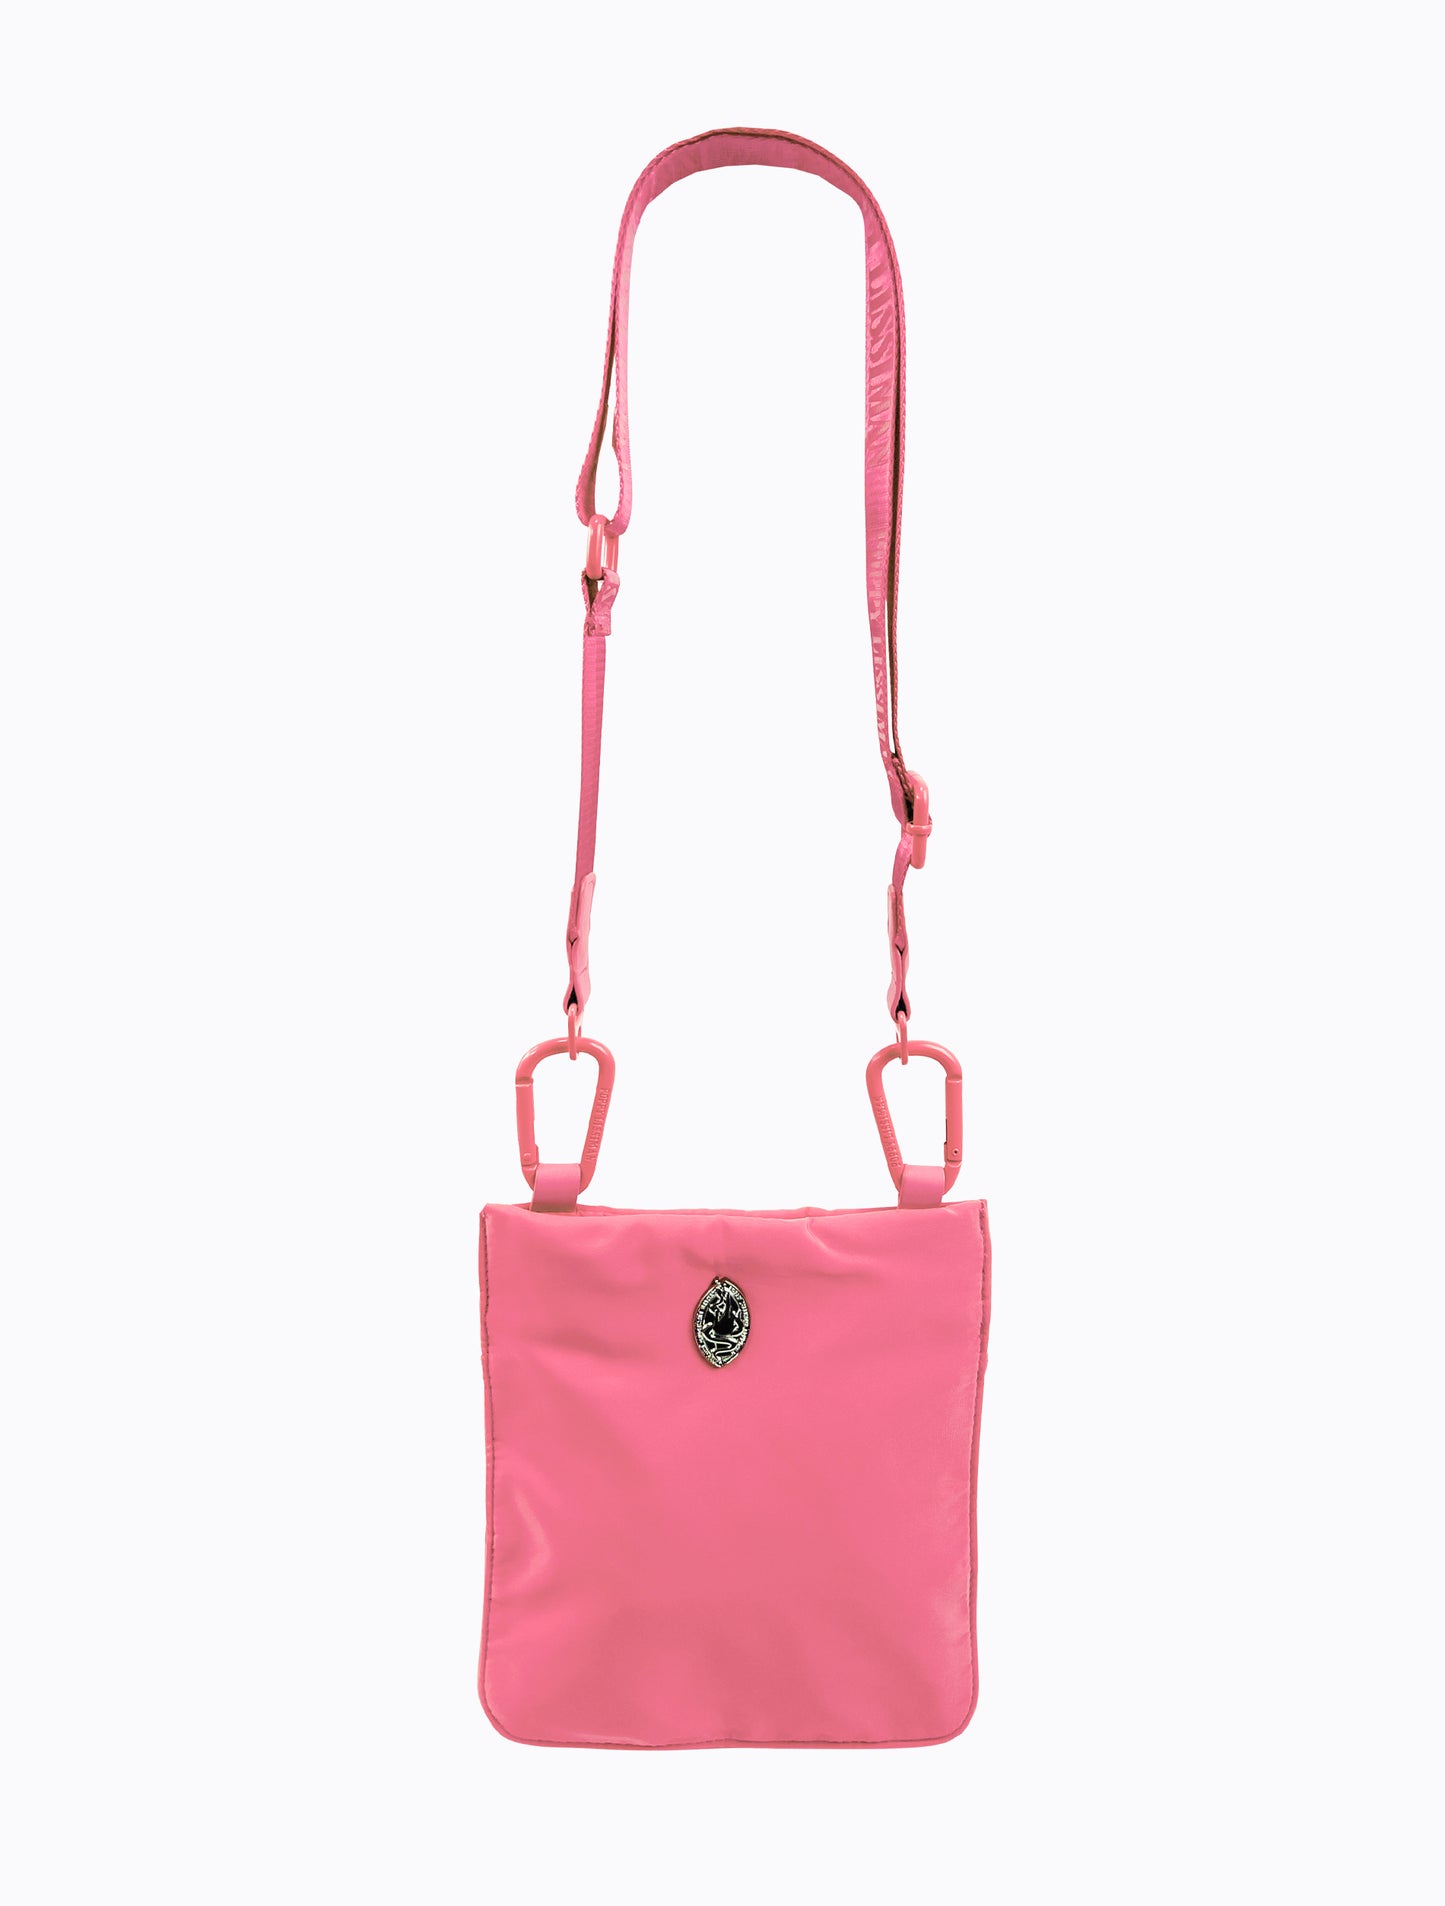 Jacques Shoulder Bag - Hot Pink